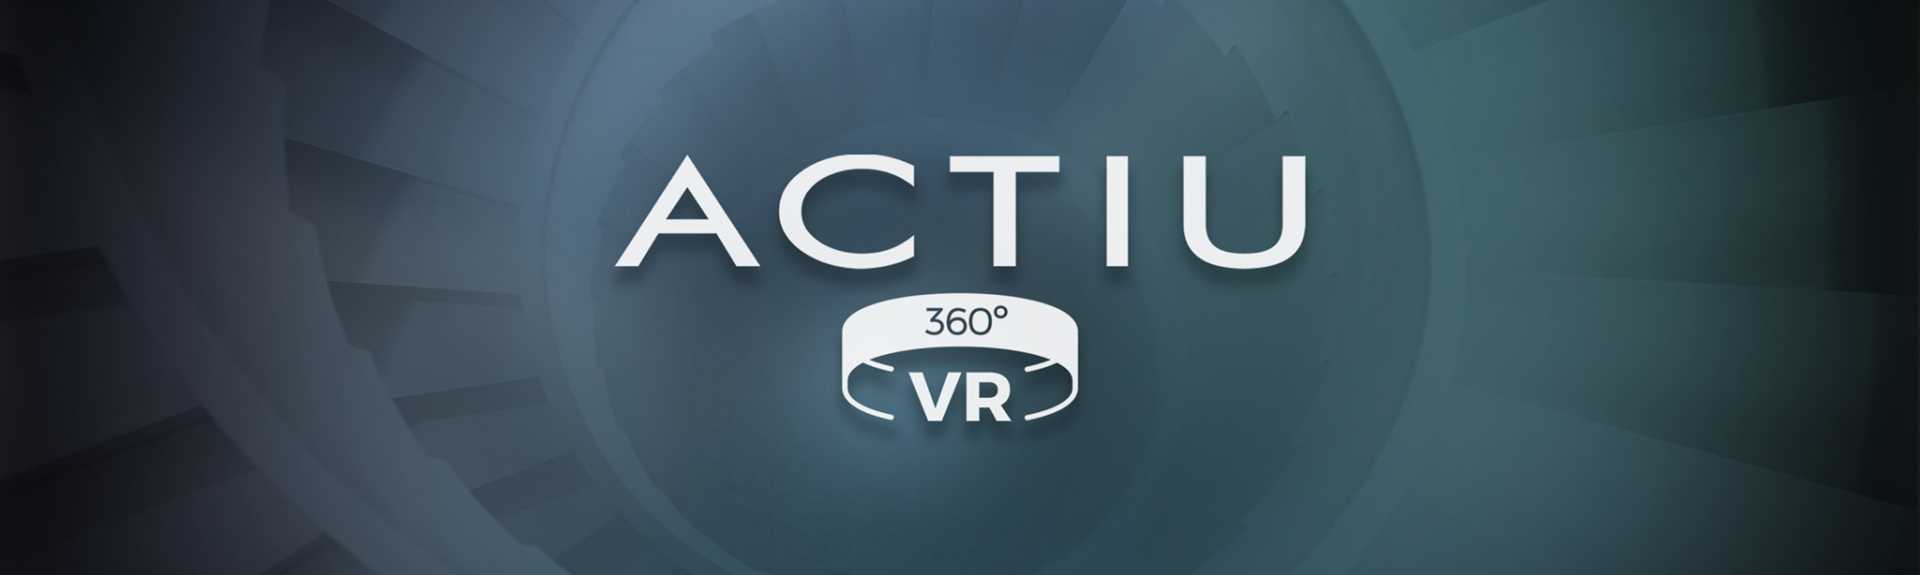 ACTIU VR360